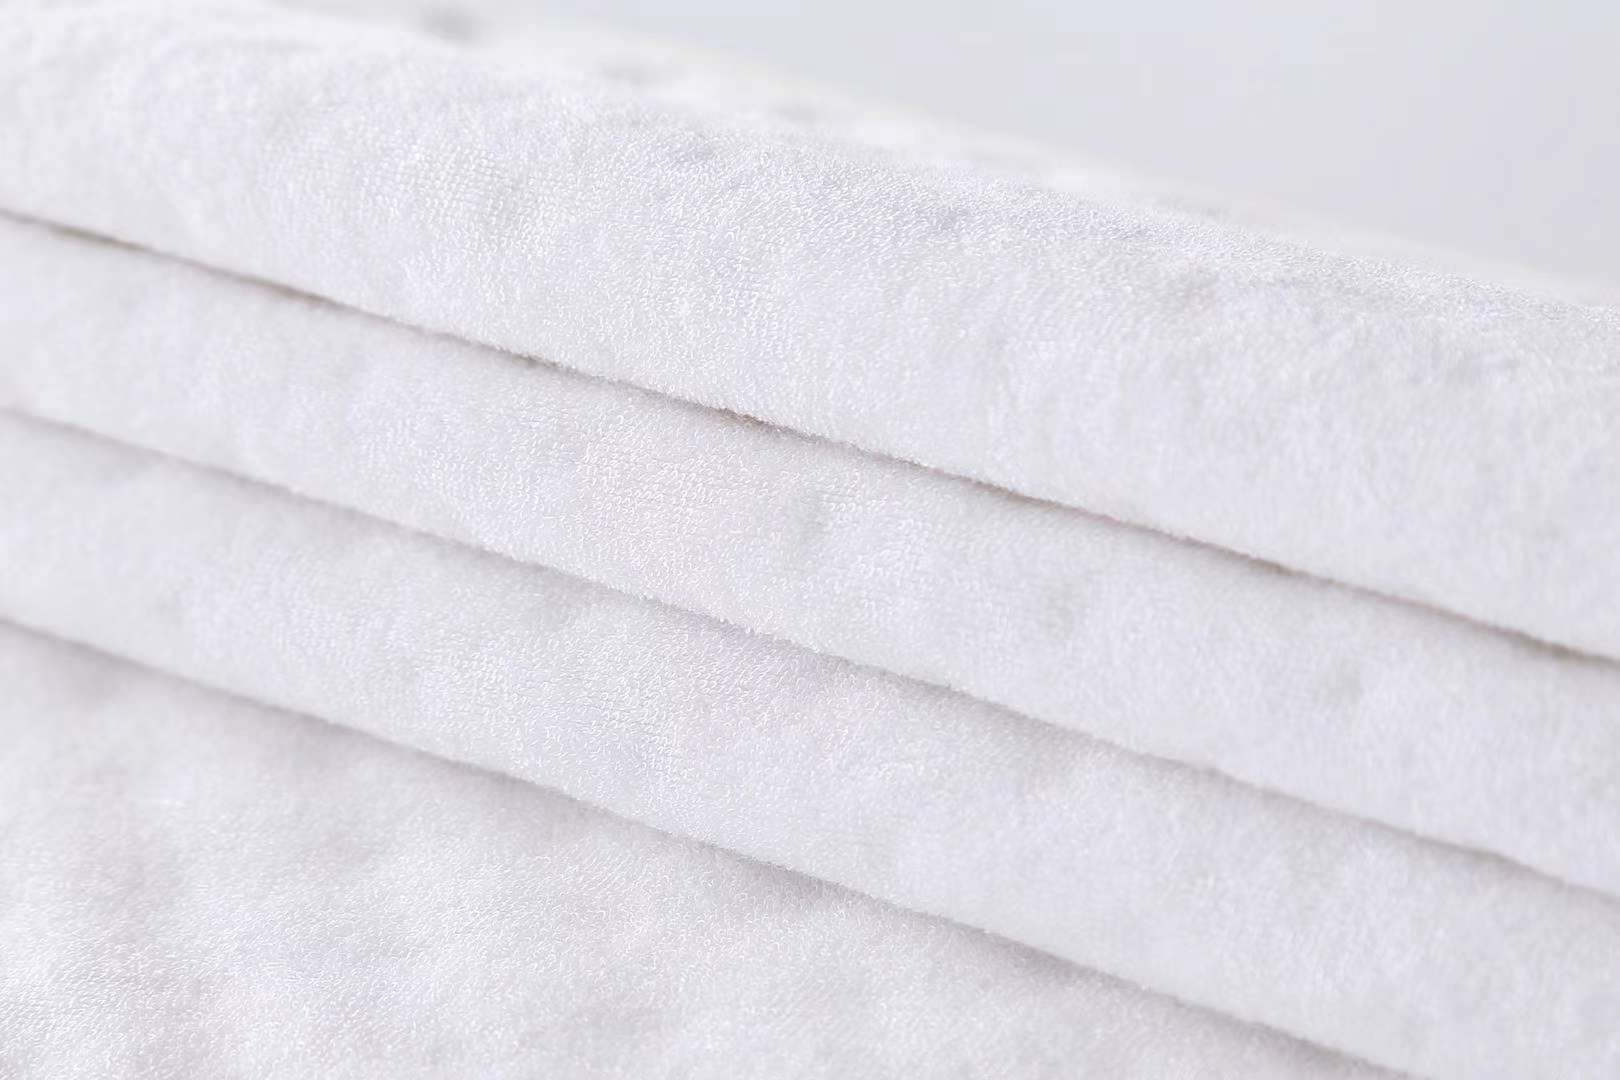 4层彩棉隔尿垫 50×70  双面可用 一面精梳彩棉 中间夹层聚酯纤维  复合tpu防水层  最后一面是竹纤维 吸水性强详情图6